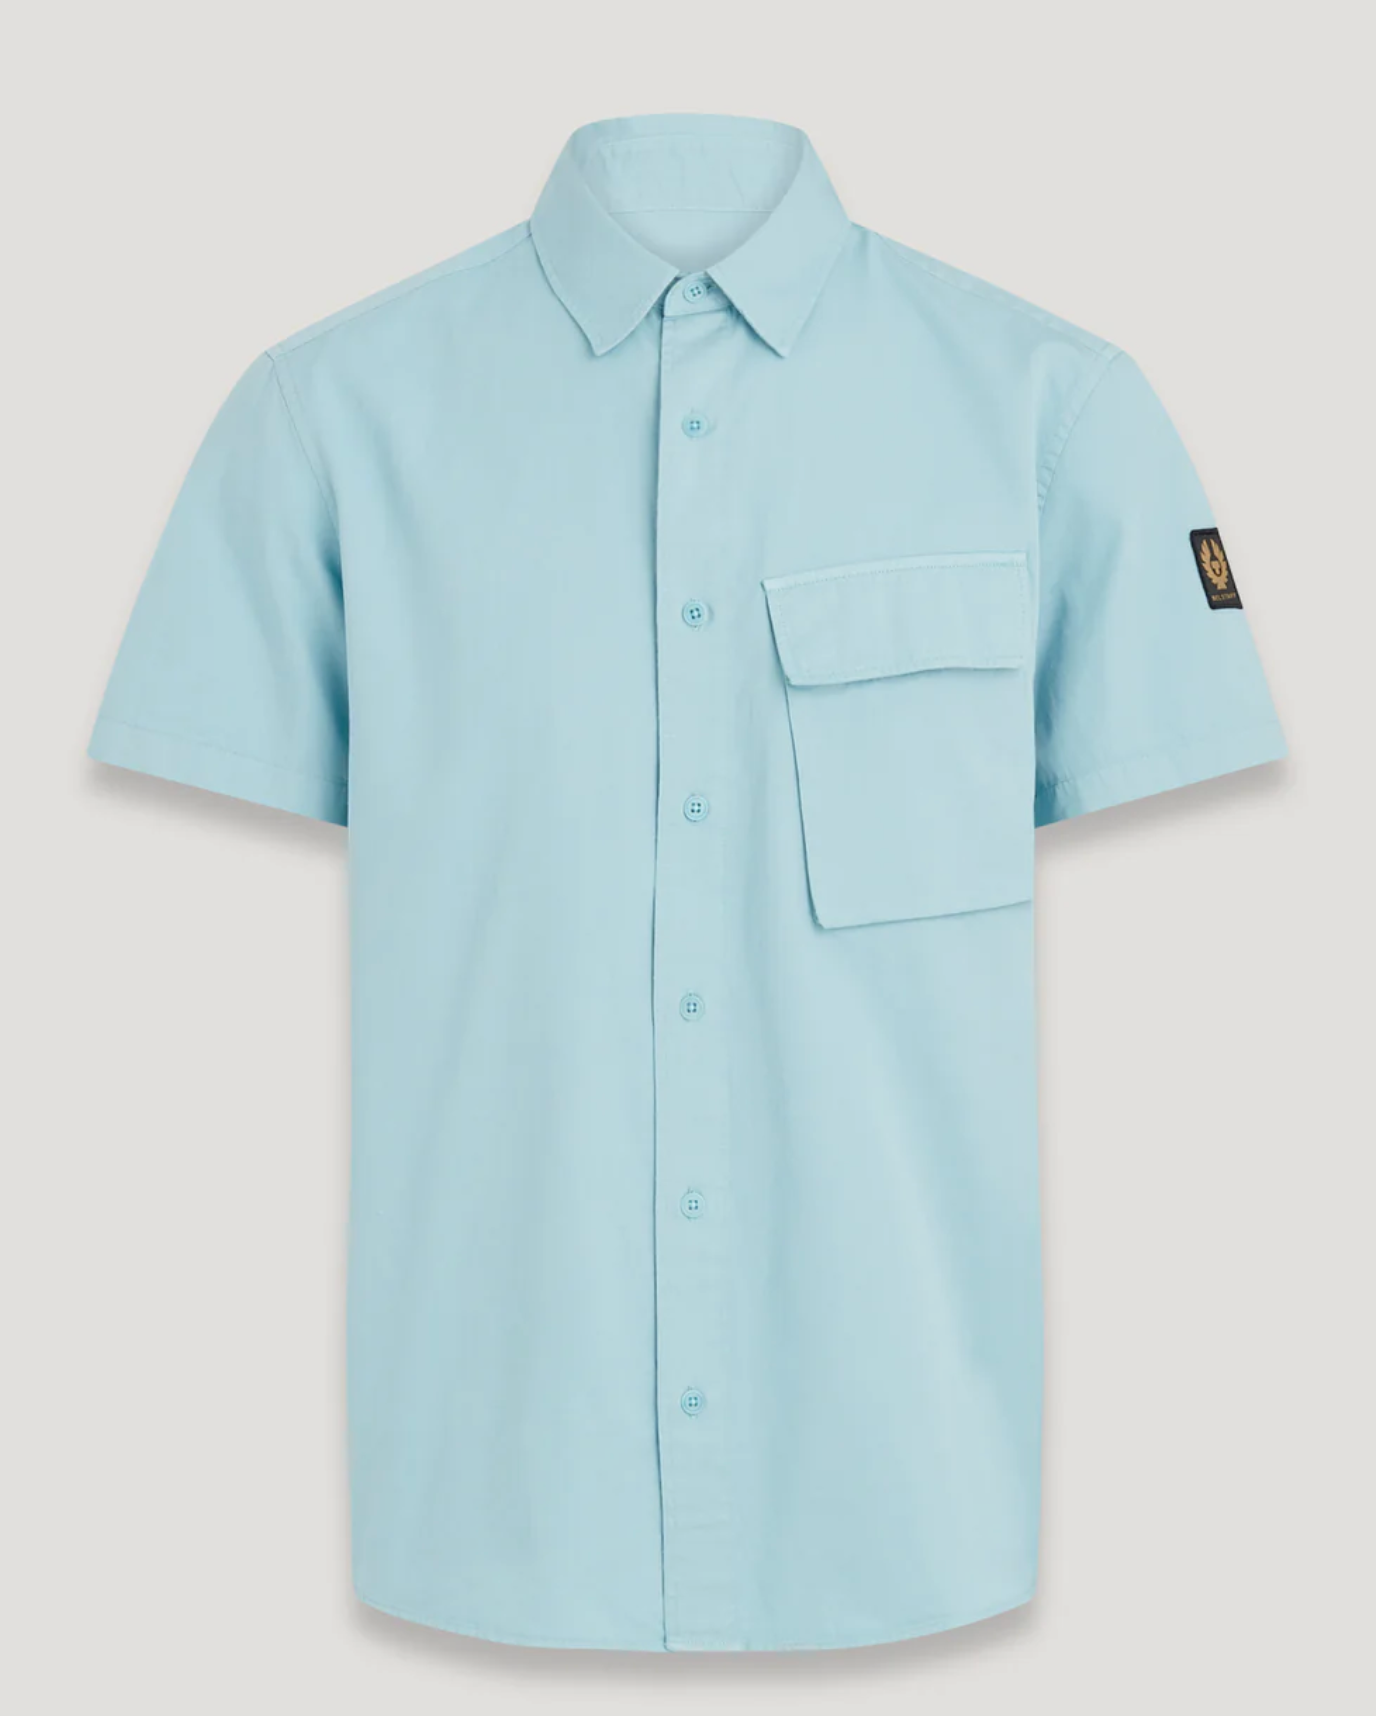 Belstaff "Scale" Short Sleeve Shirt Skyline Blue